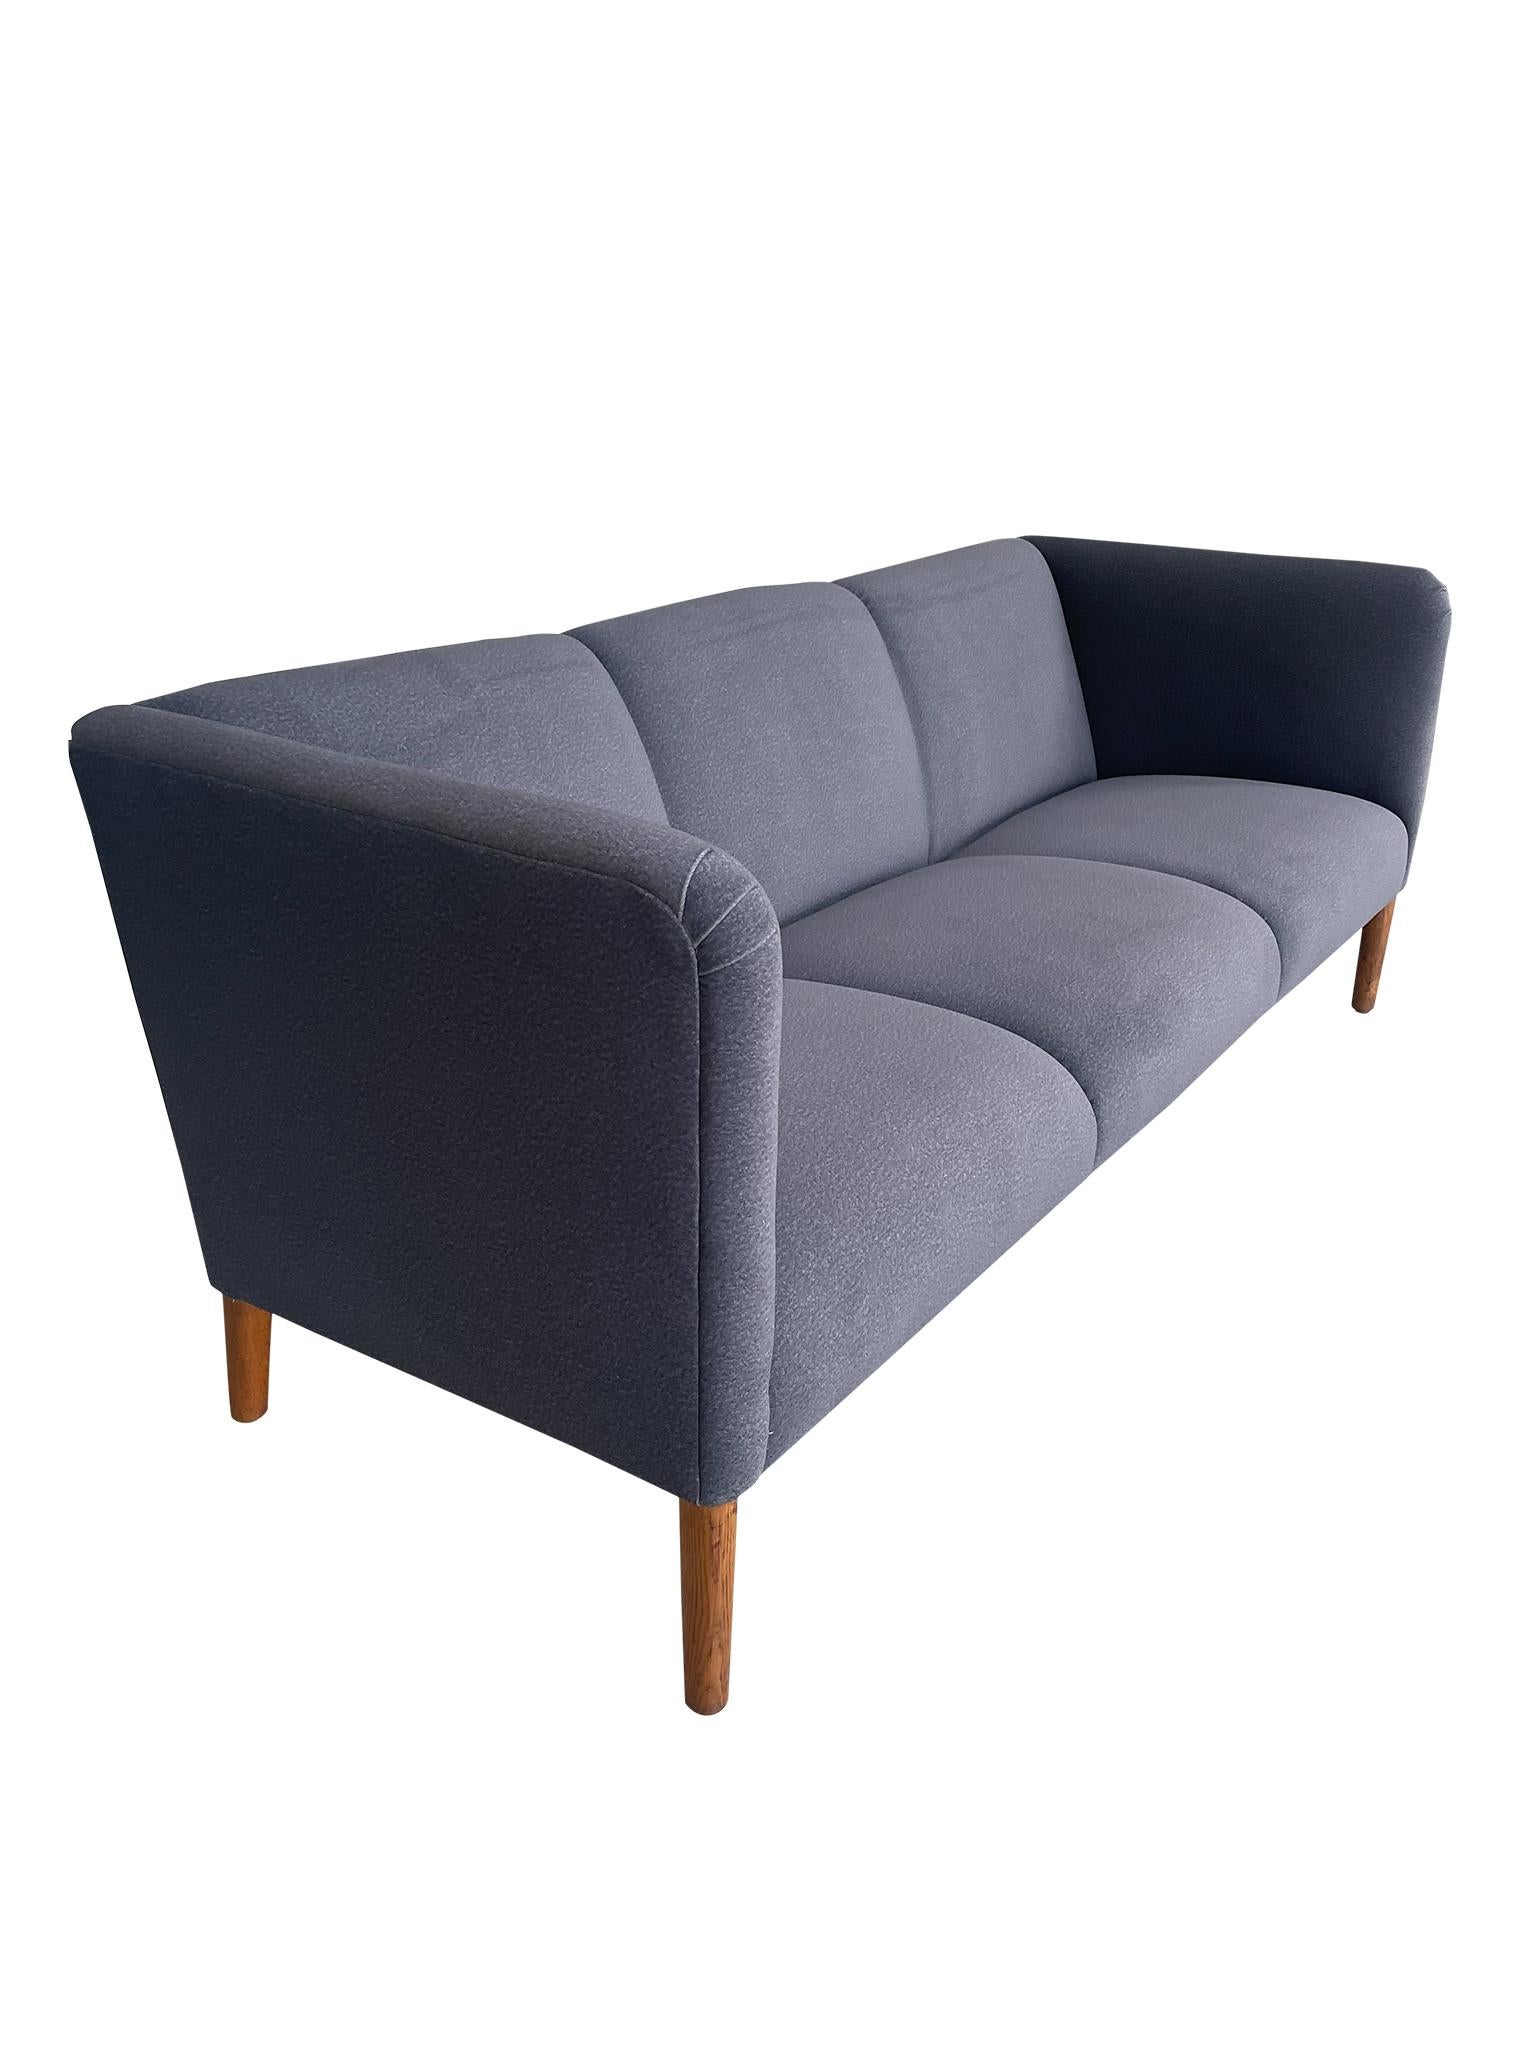 Wunderschönes dänisches modernes Modell AP18 Sofa von Hans Wegner, dem berühmten Möbeldesigner der Jahrhundertmitte, für AP Stolen. Das Modell AP18 Sofa zeichnet sich durch sein schlankes Profil, die drei Sitzplätze und die leicht zurückgelehnte